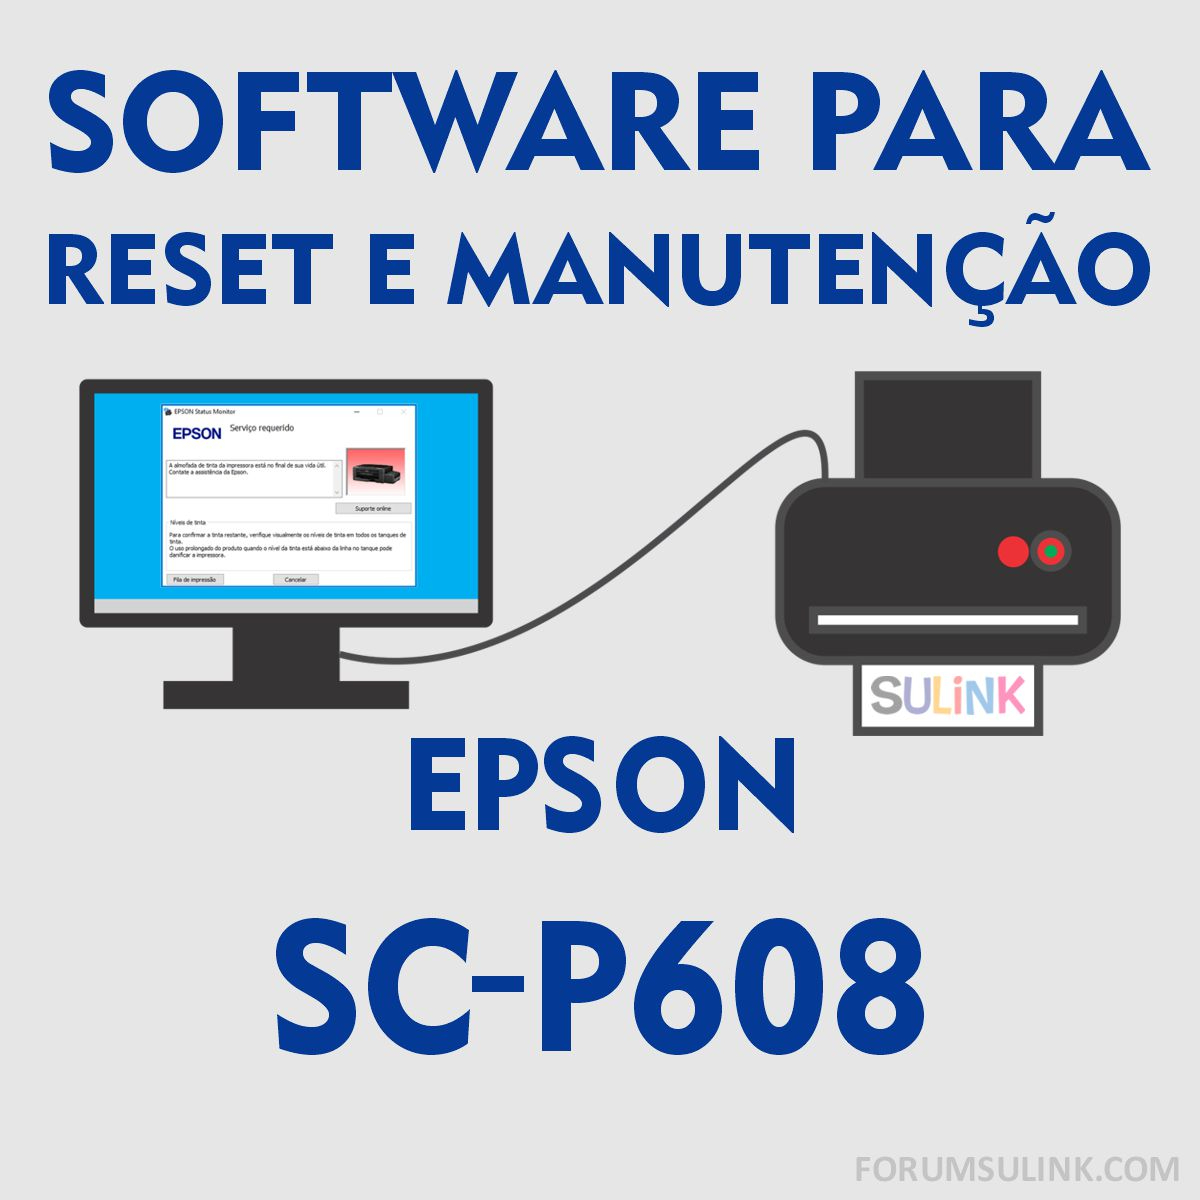 Epson SC-P608 | Software para Reset e Manutenção